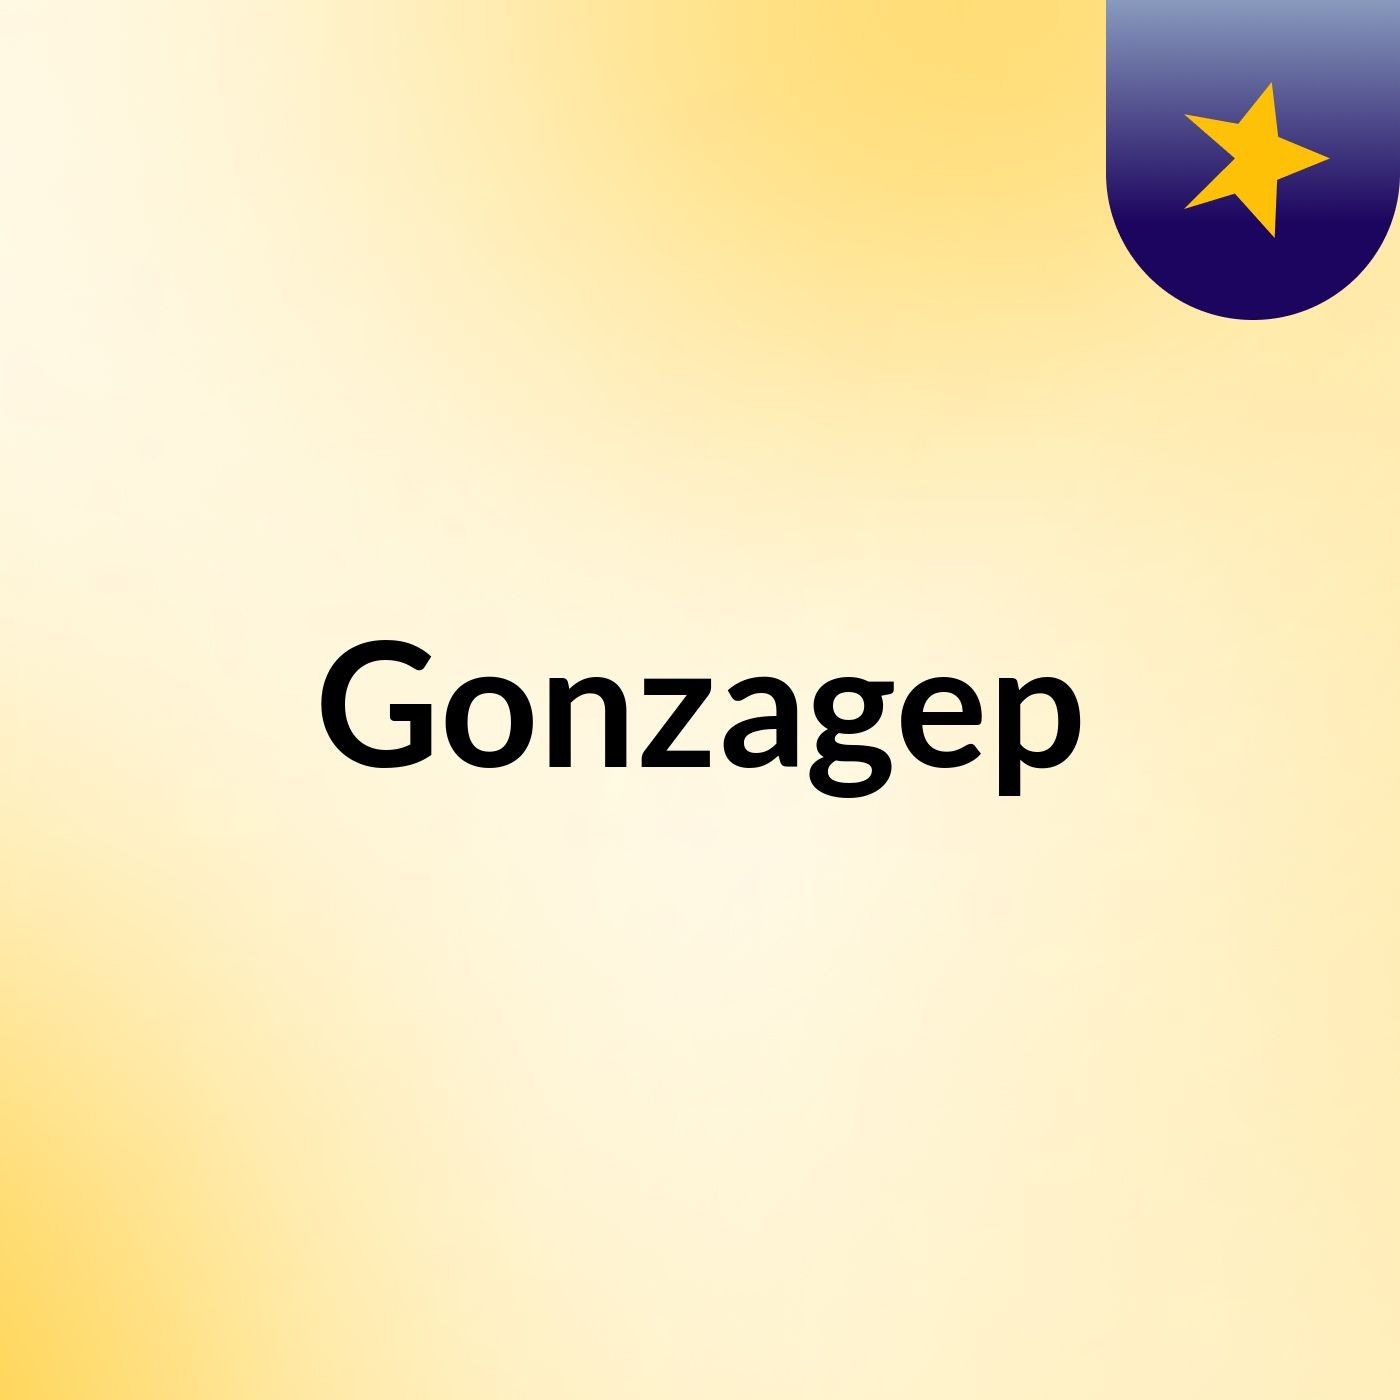 Gonzagep